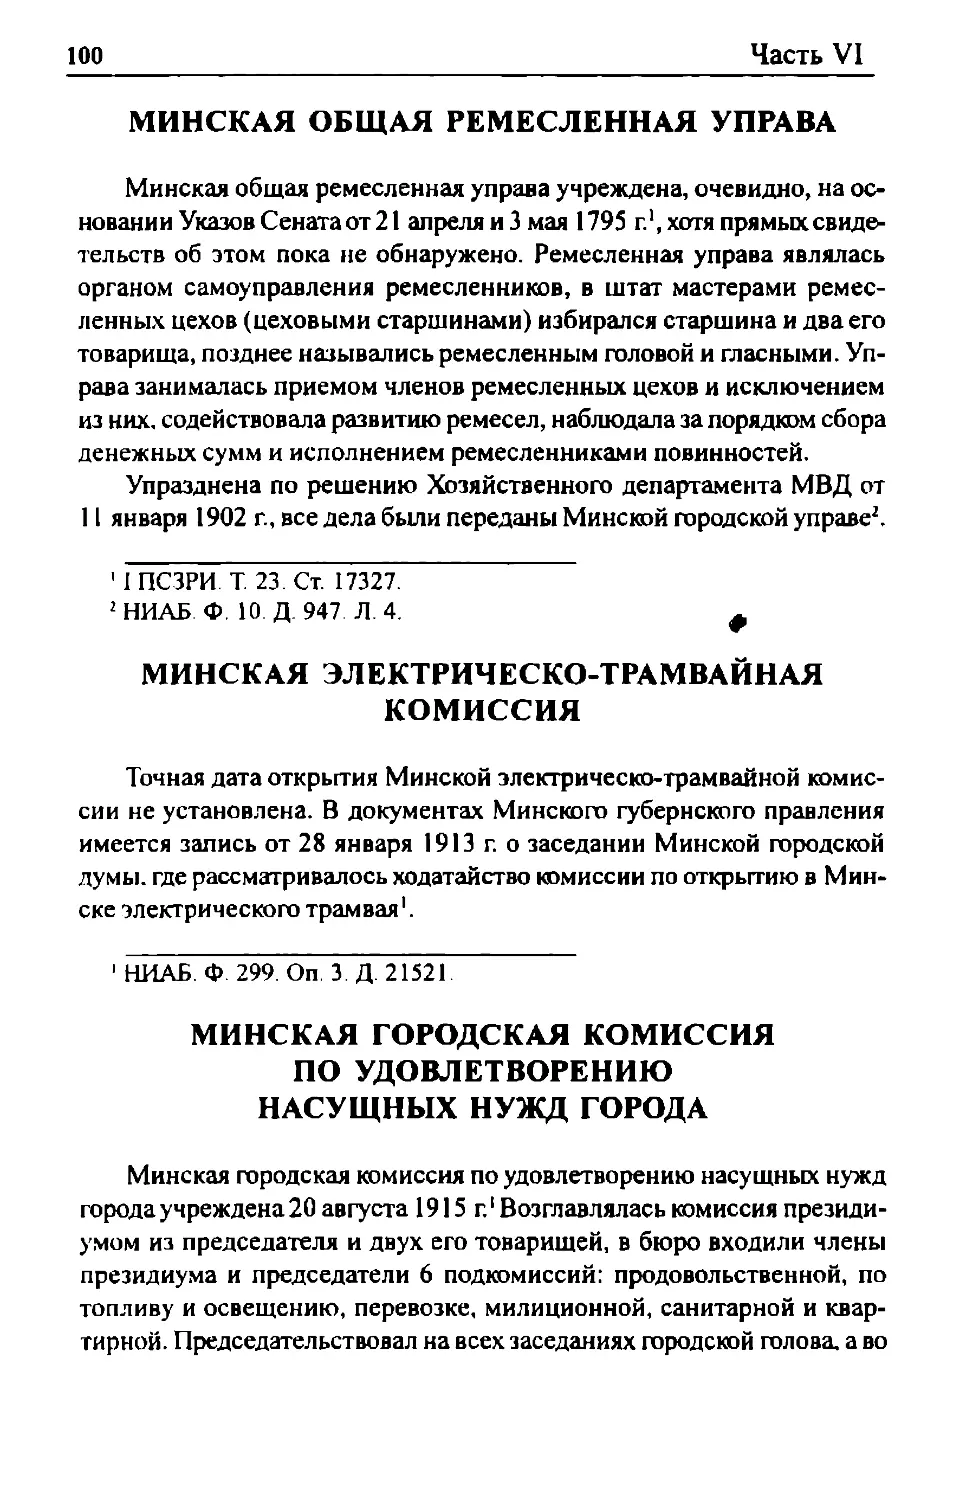 Минская общая ремесленная управа
Минская электрическо-трамвайная комиссия
Минская городская комиссия по удовлетворению насущных нужд города